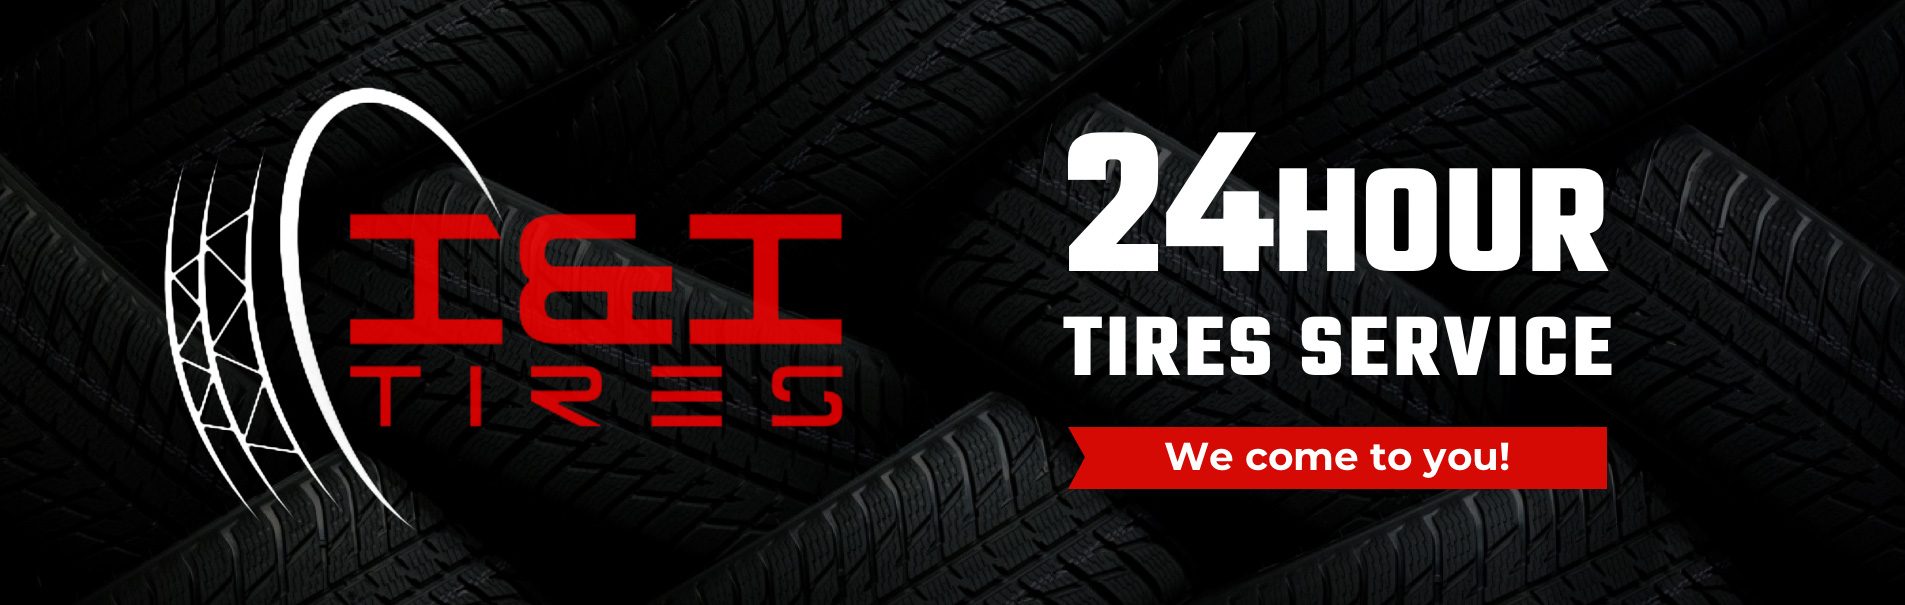 24 hour tire shop kansas city